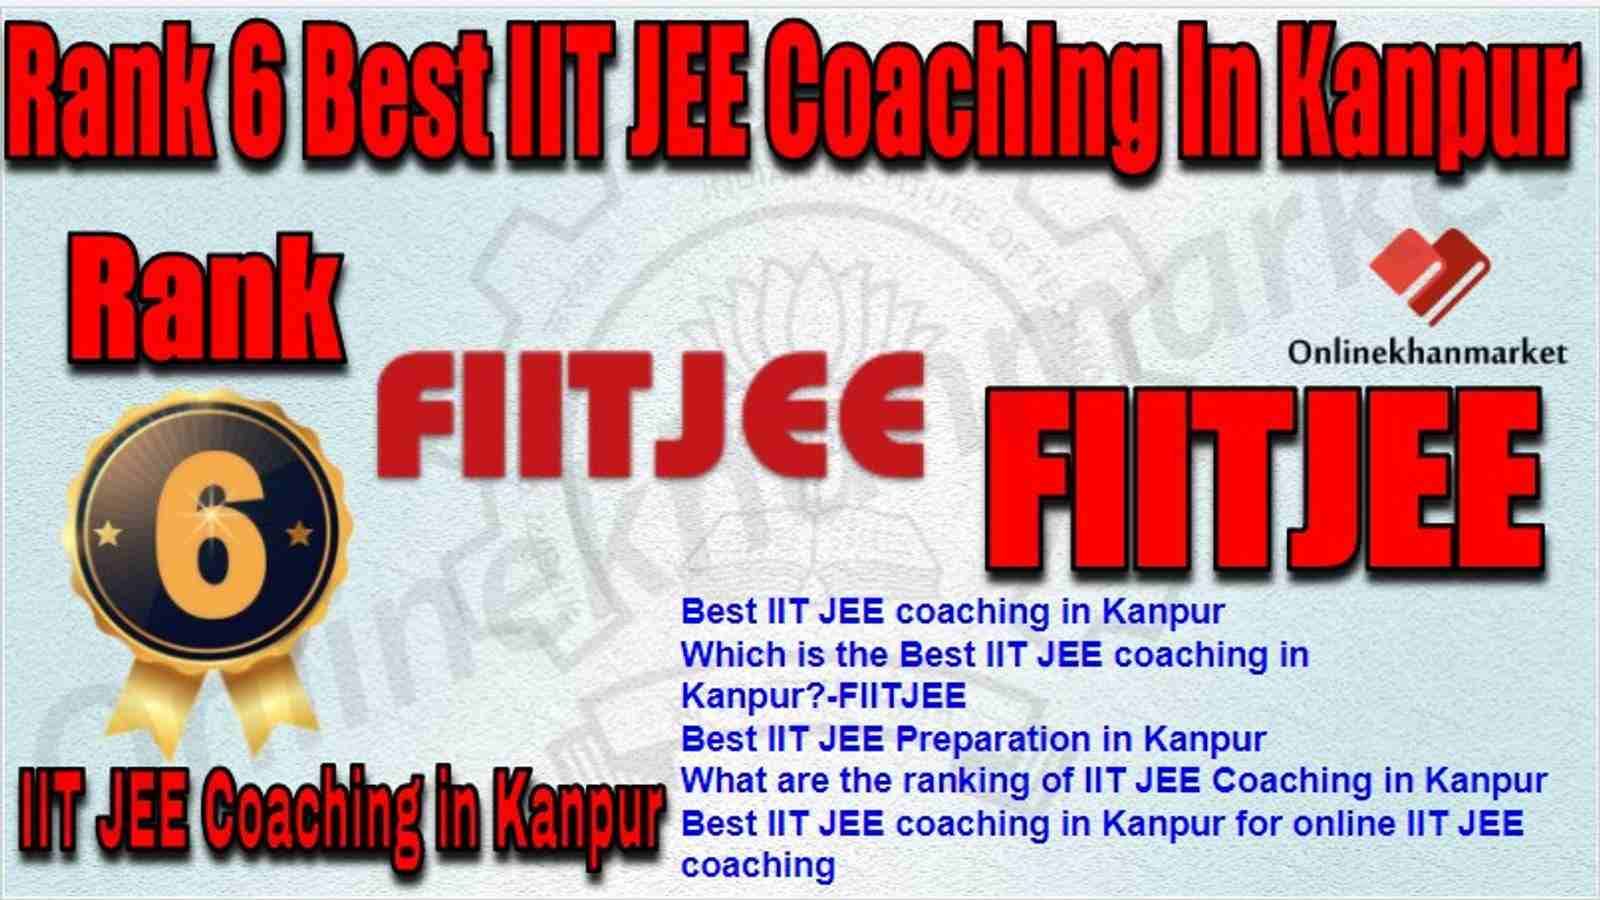 Rank 6 Best IIT JEE Coaching in kanpur